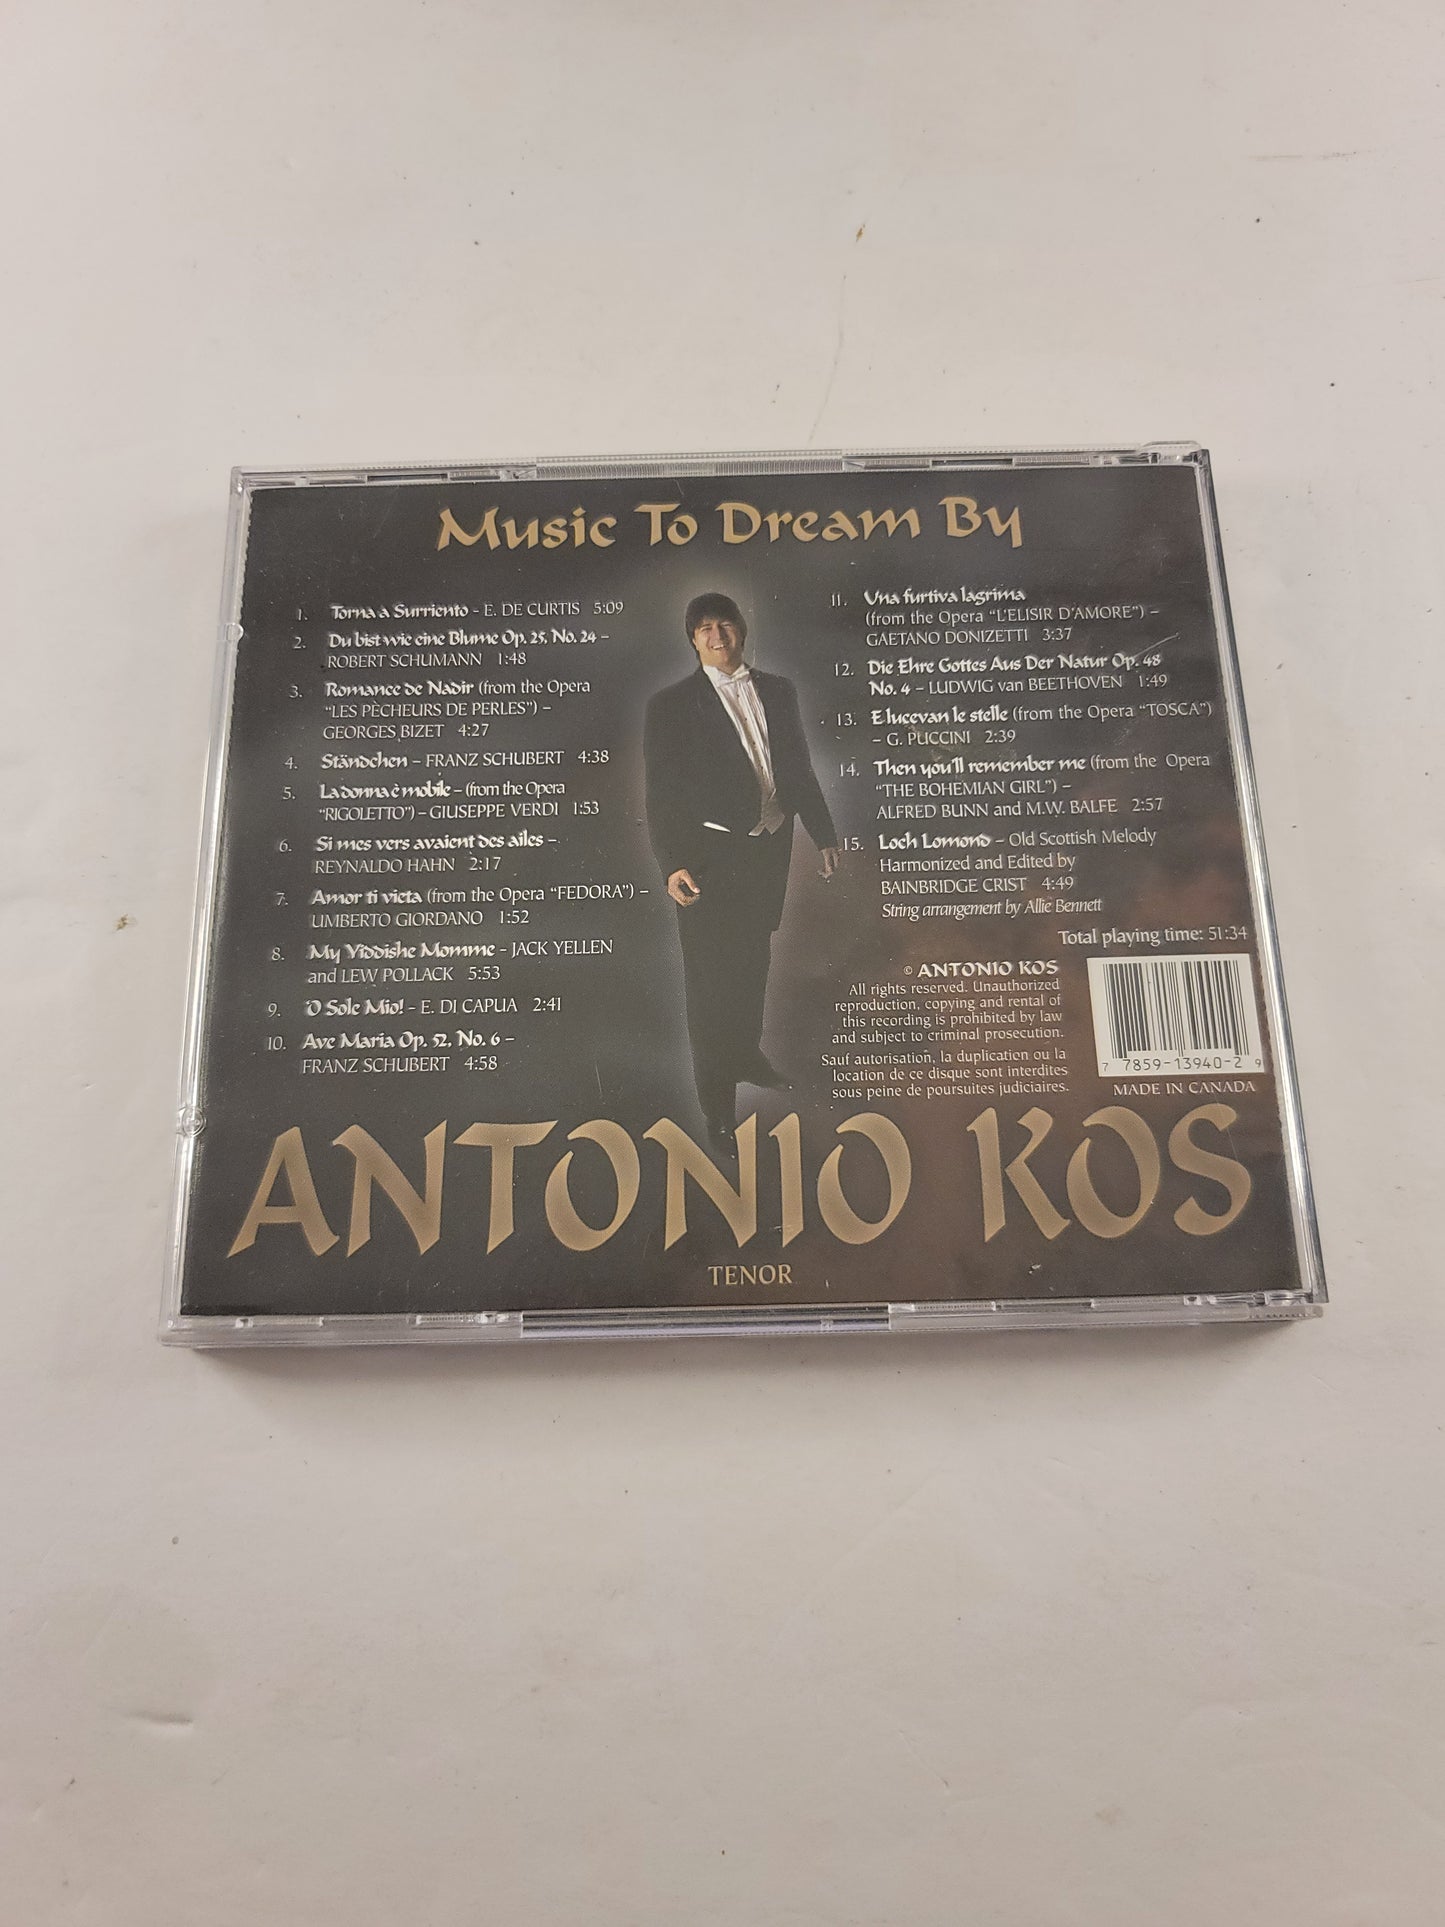 Antonio Kos - "Music to Dream By" CD